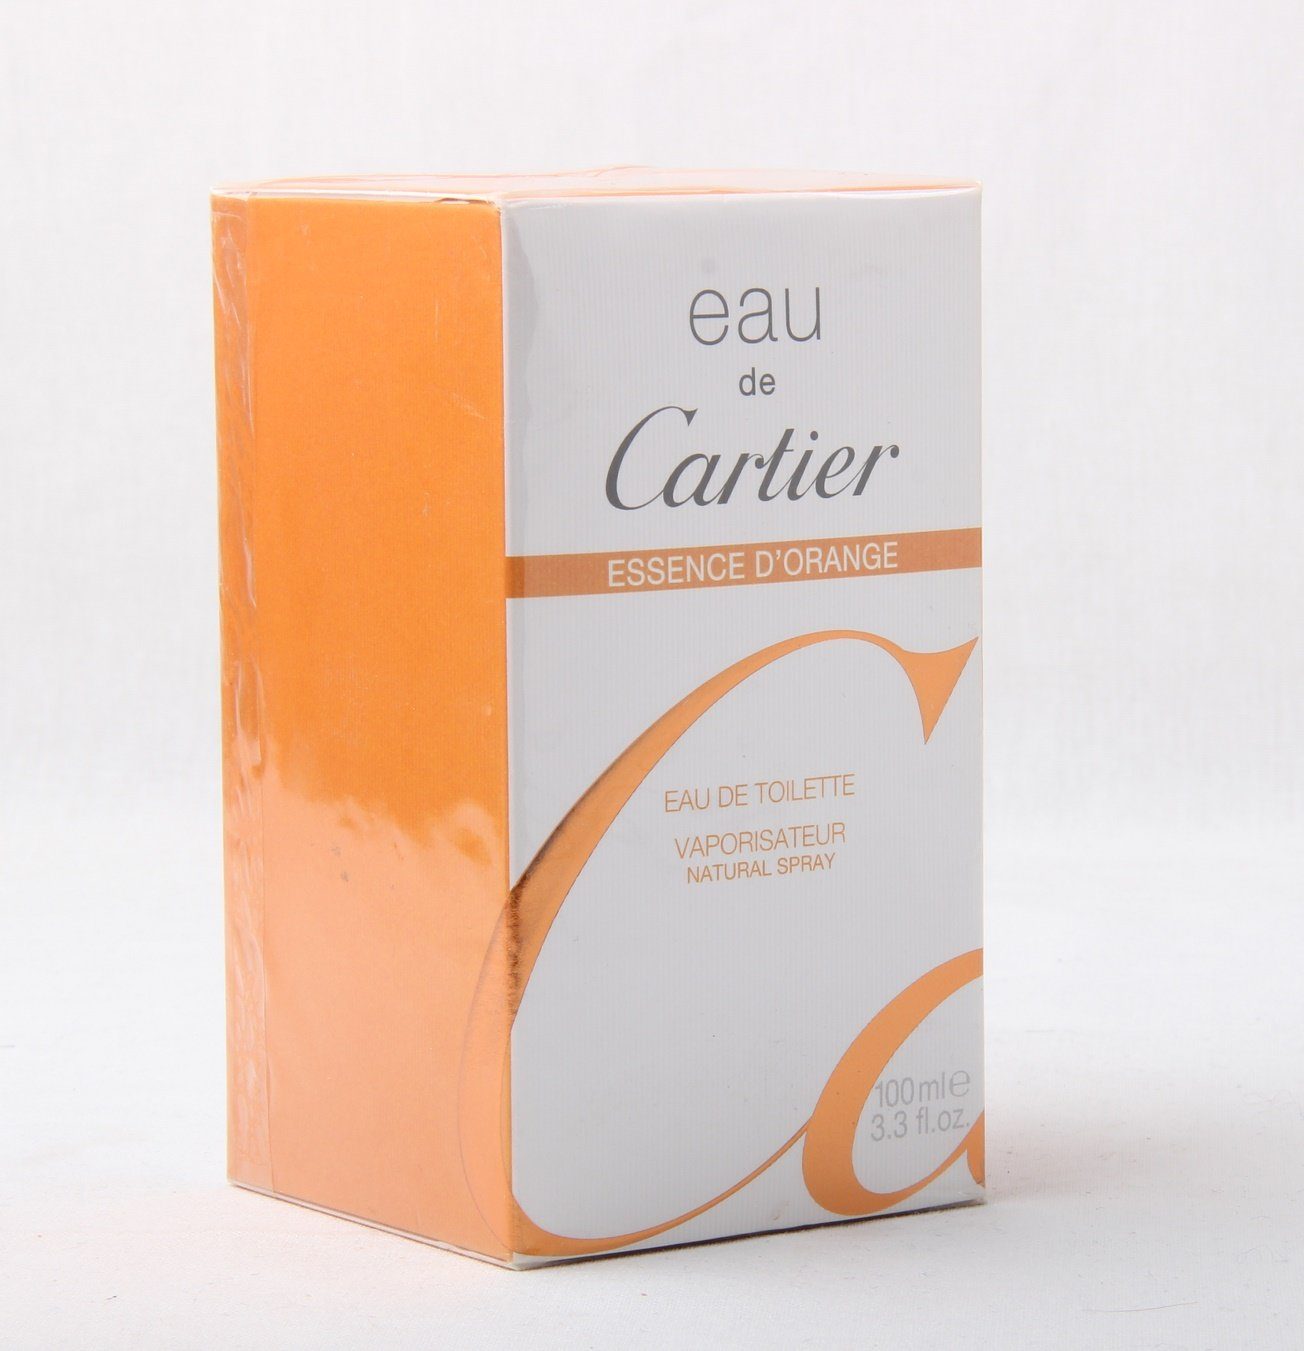 D'Orange Cartier Eau Essence Eau Toilette de Spray de de Eau Toilette Cartier 100ml